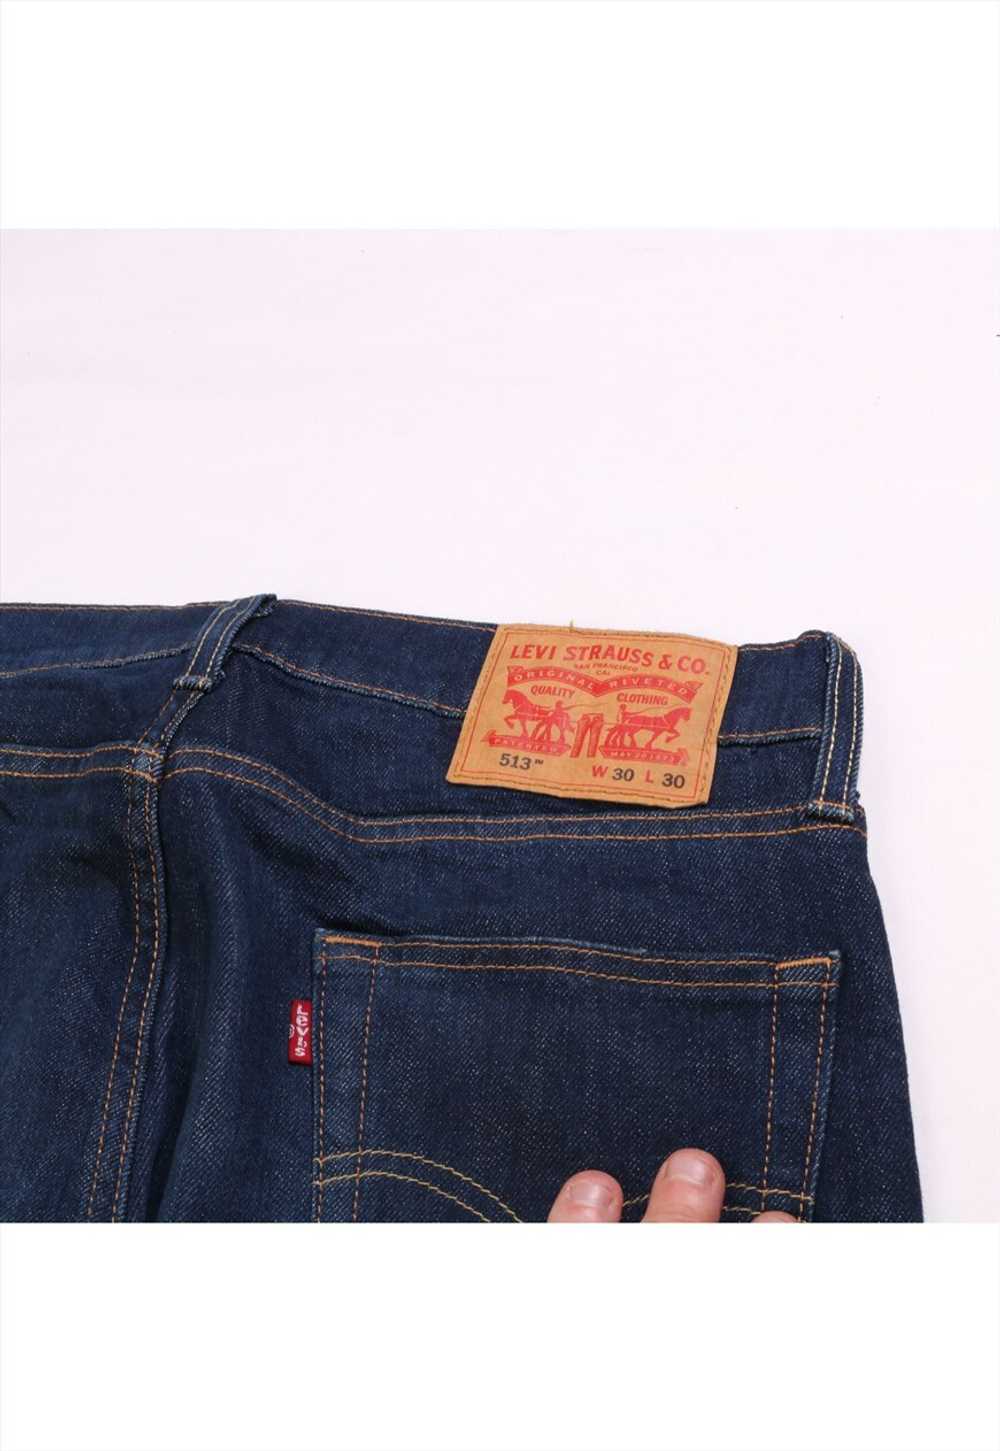 Vintage 90's Levi's Jeans / Pants 513 Denim Slim - image 3